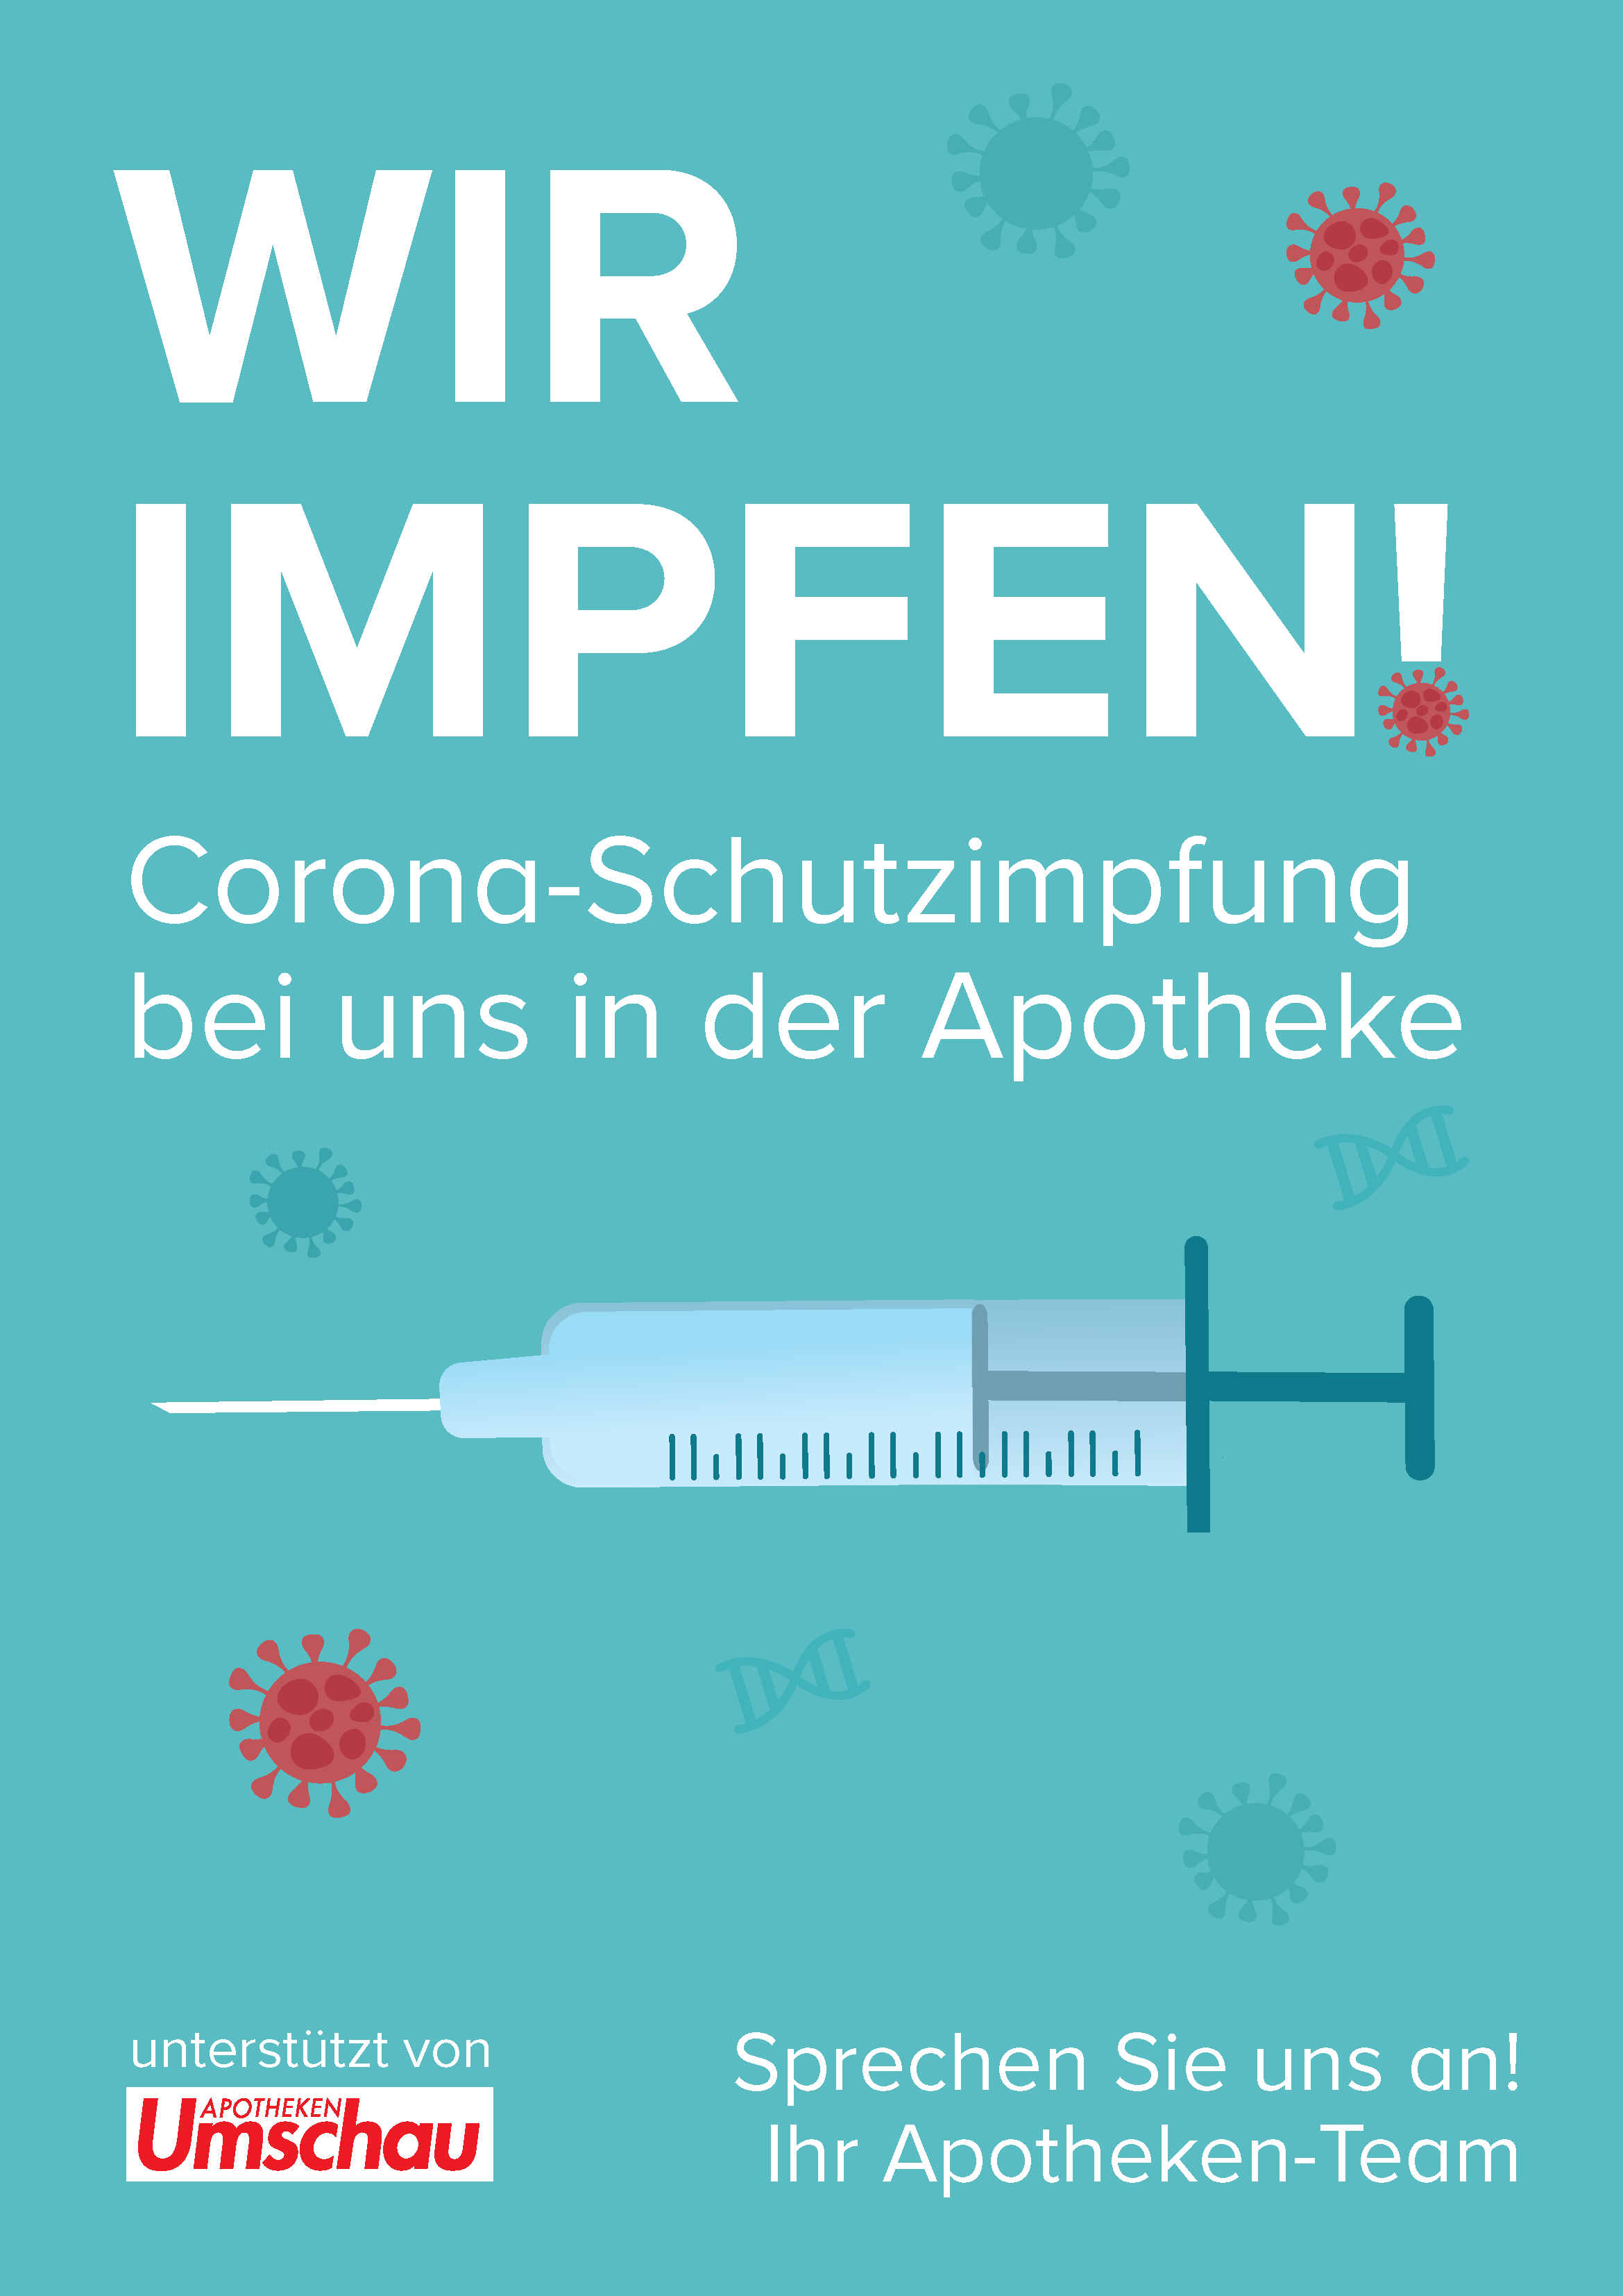 Wir impfen gegen das Coronavirus